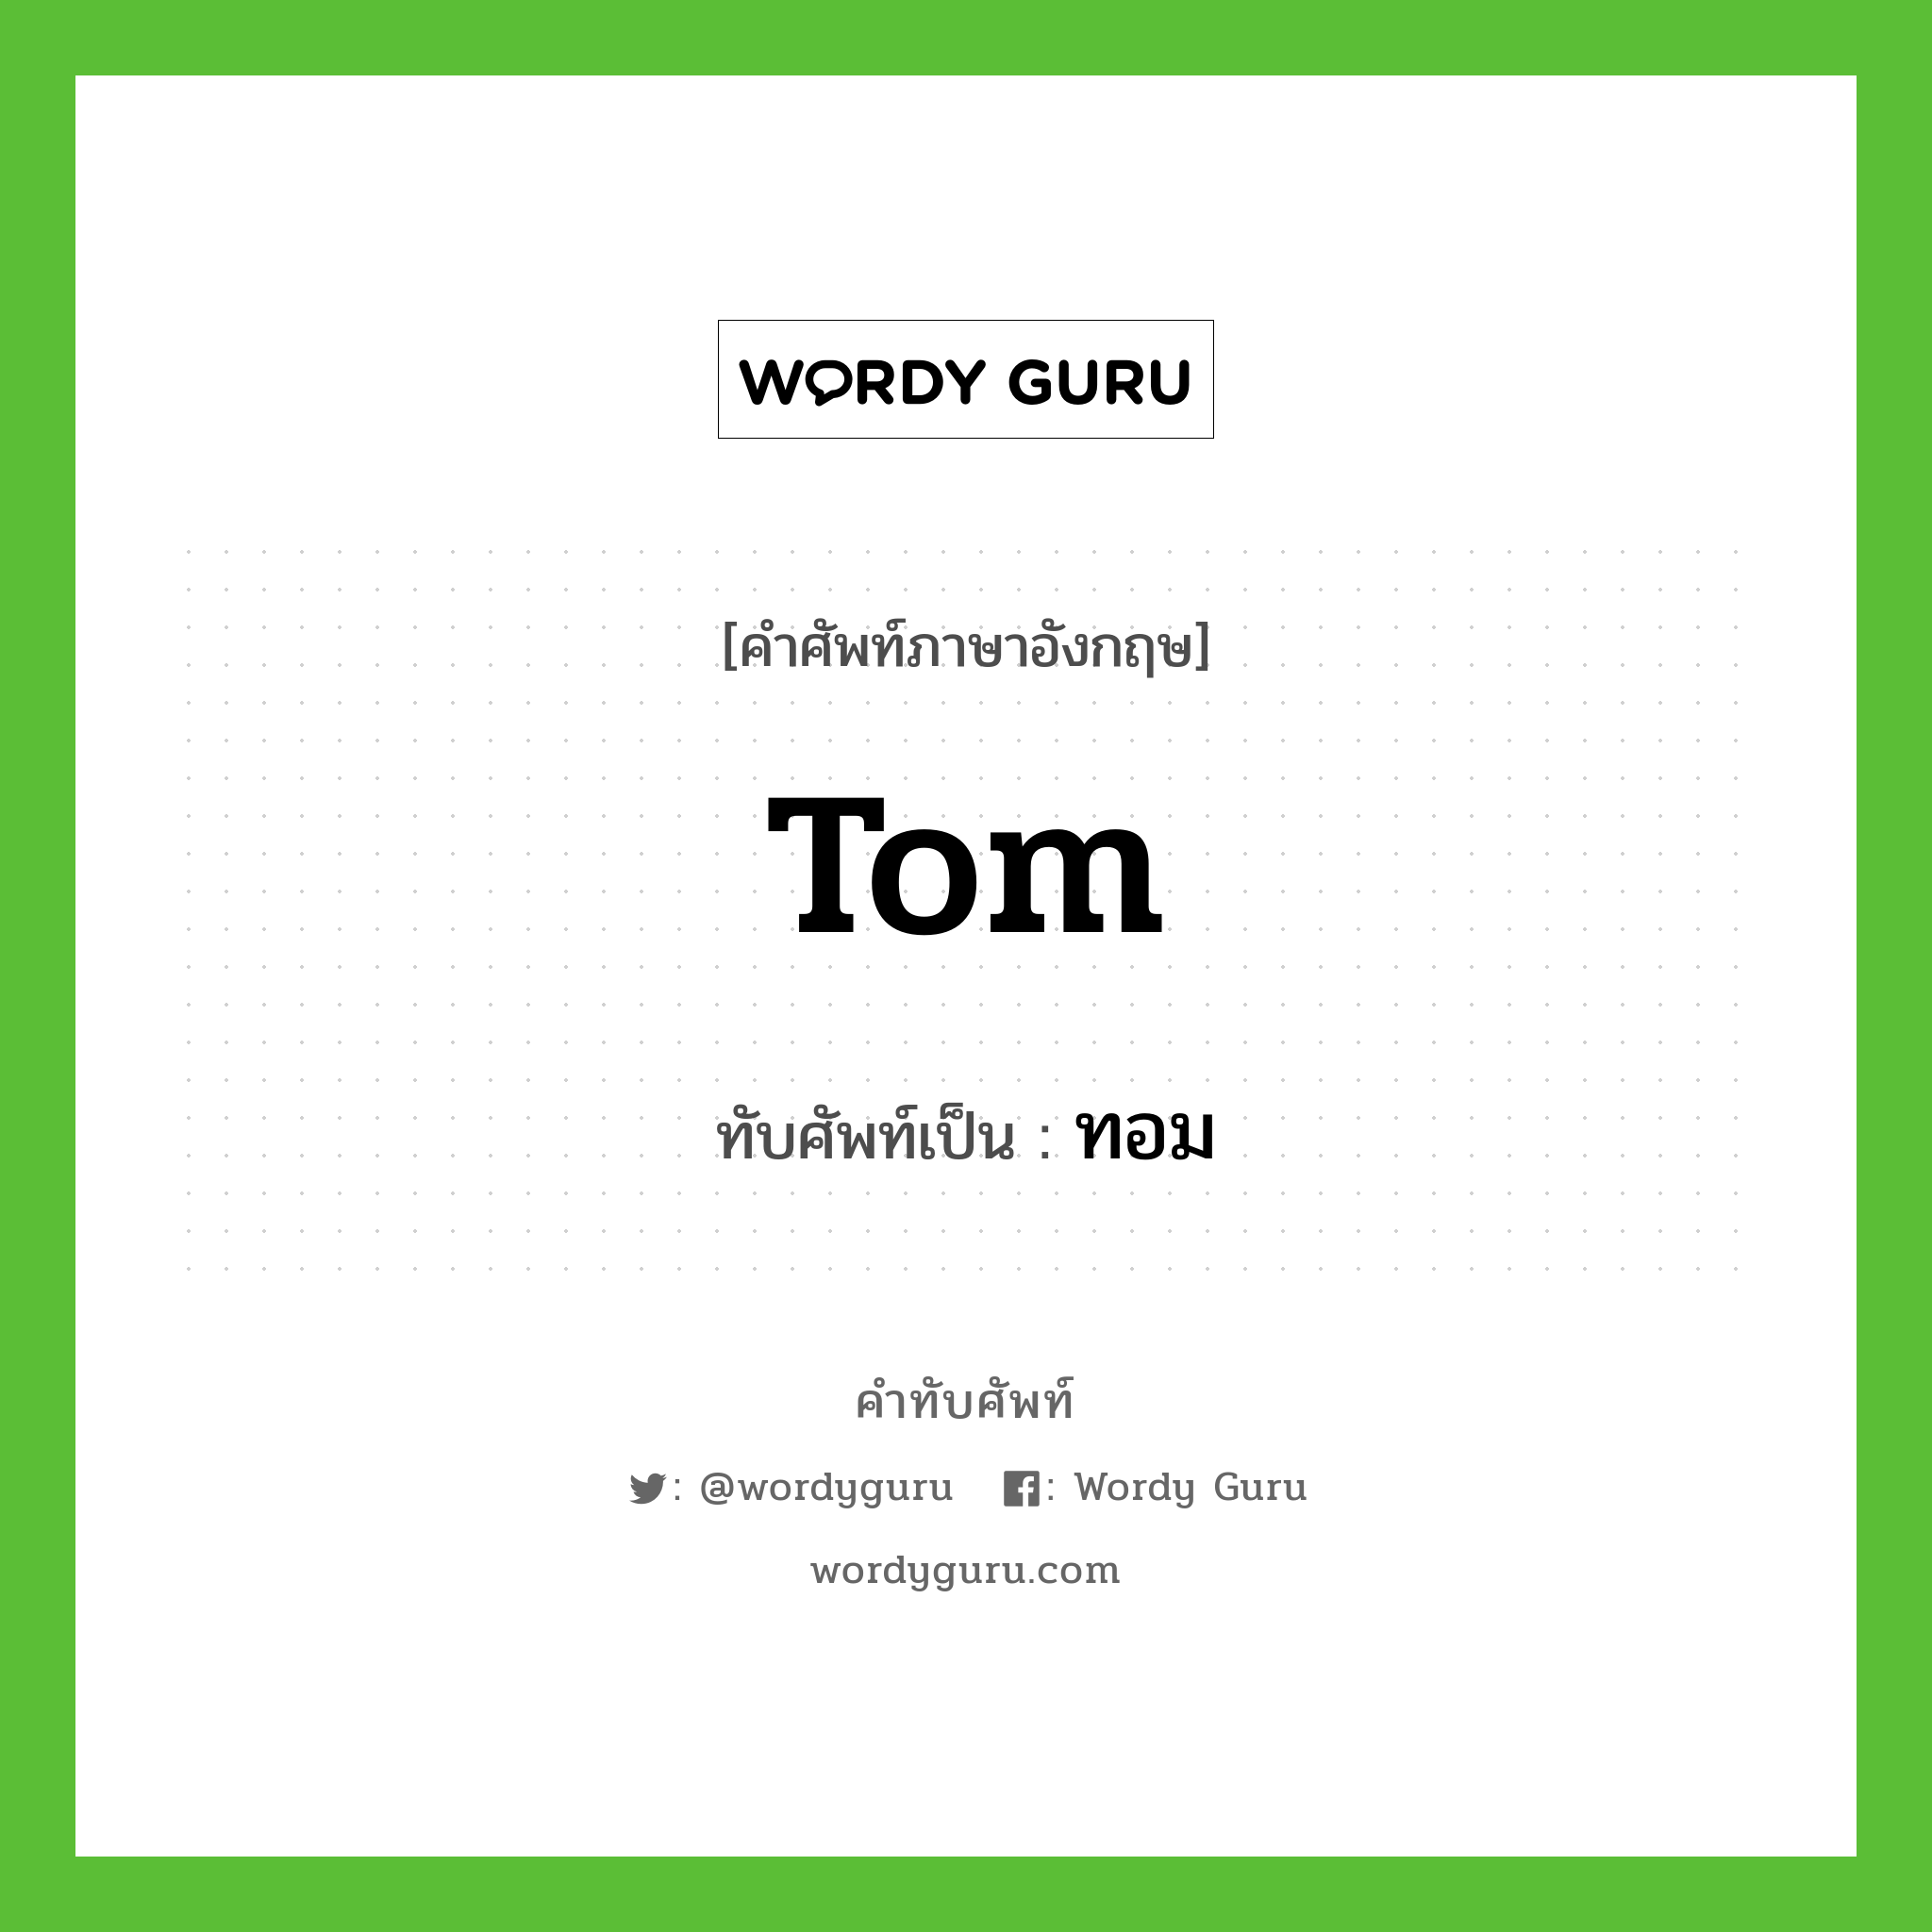 ทอม เขียนอย่างไร?, คำศัพท์ภาษาอังกฤษ ทอม ทับศัพท์เป็น Tom